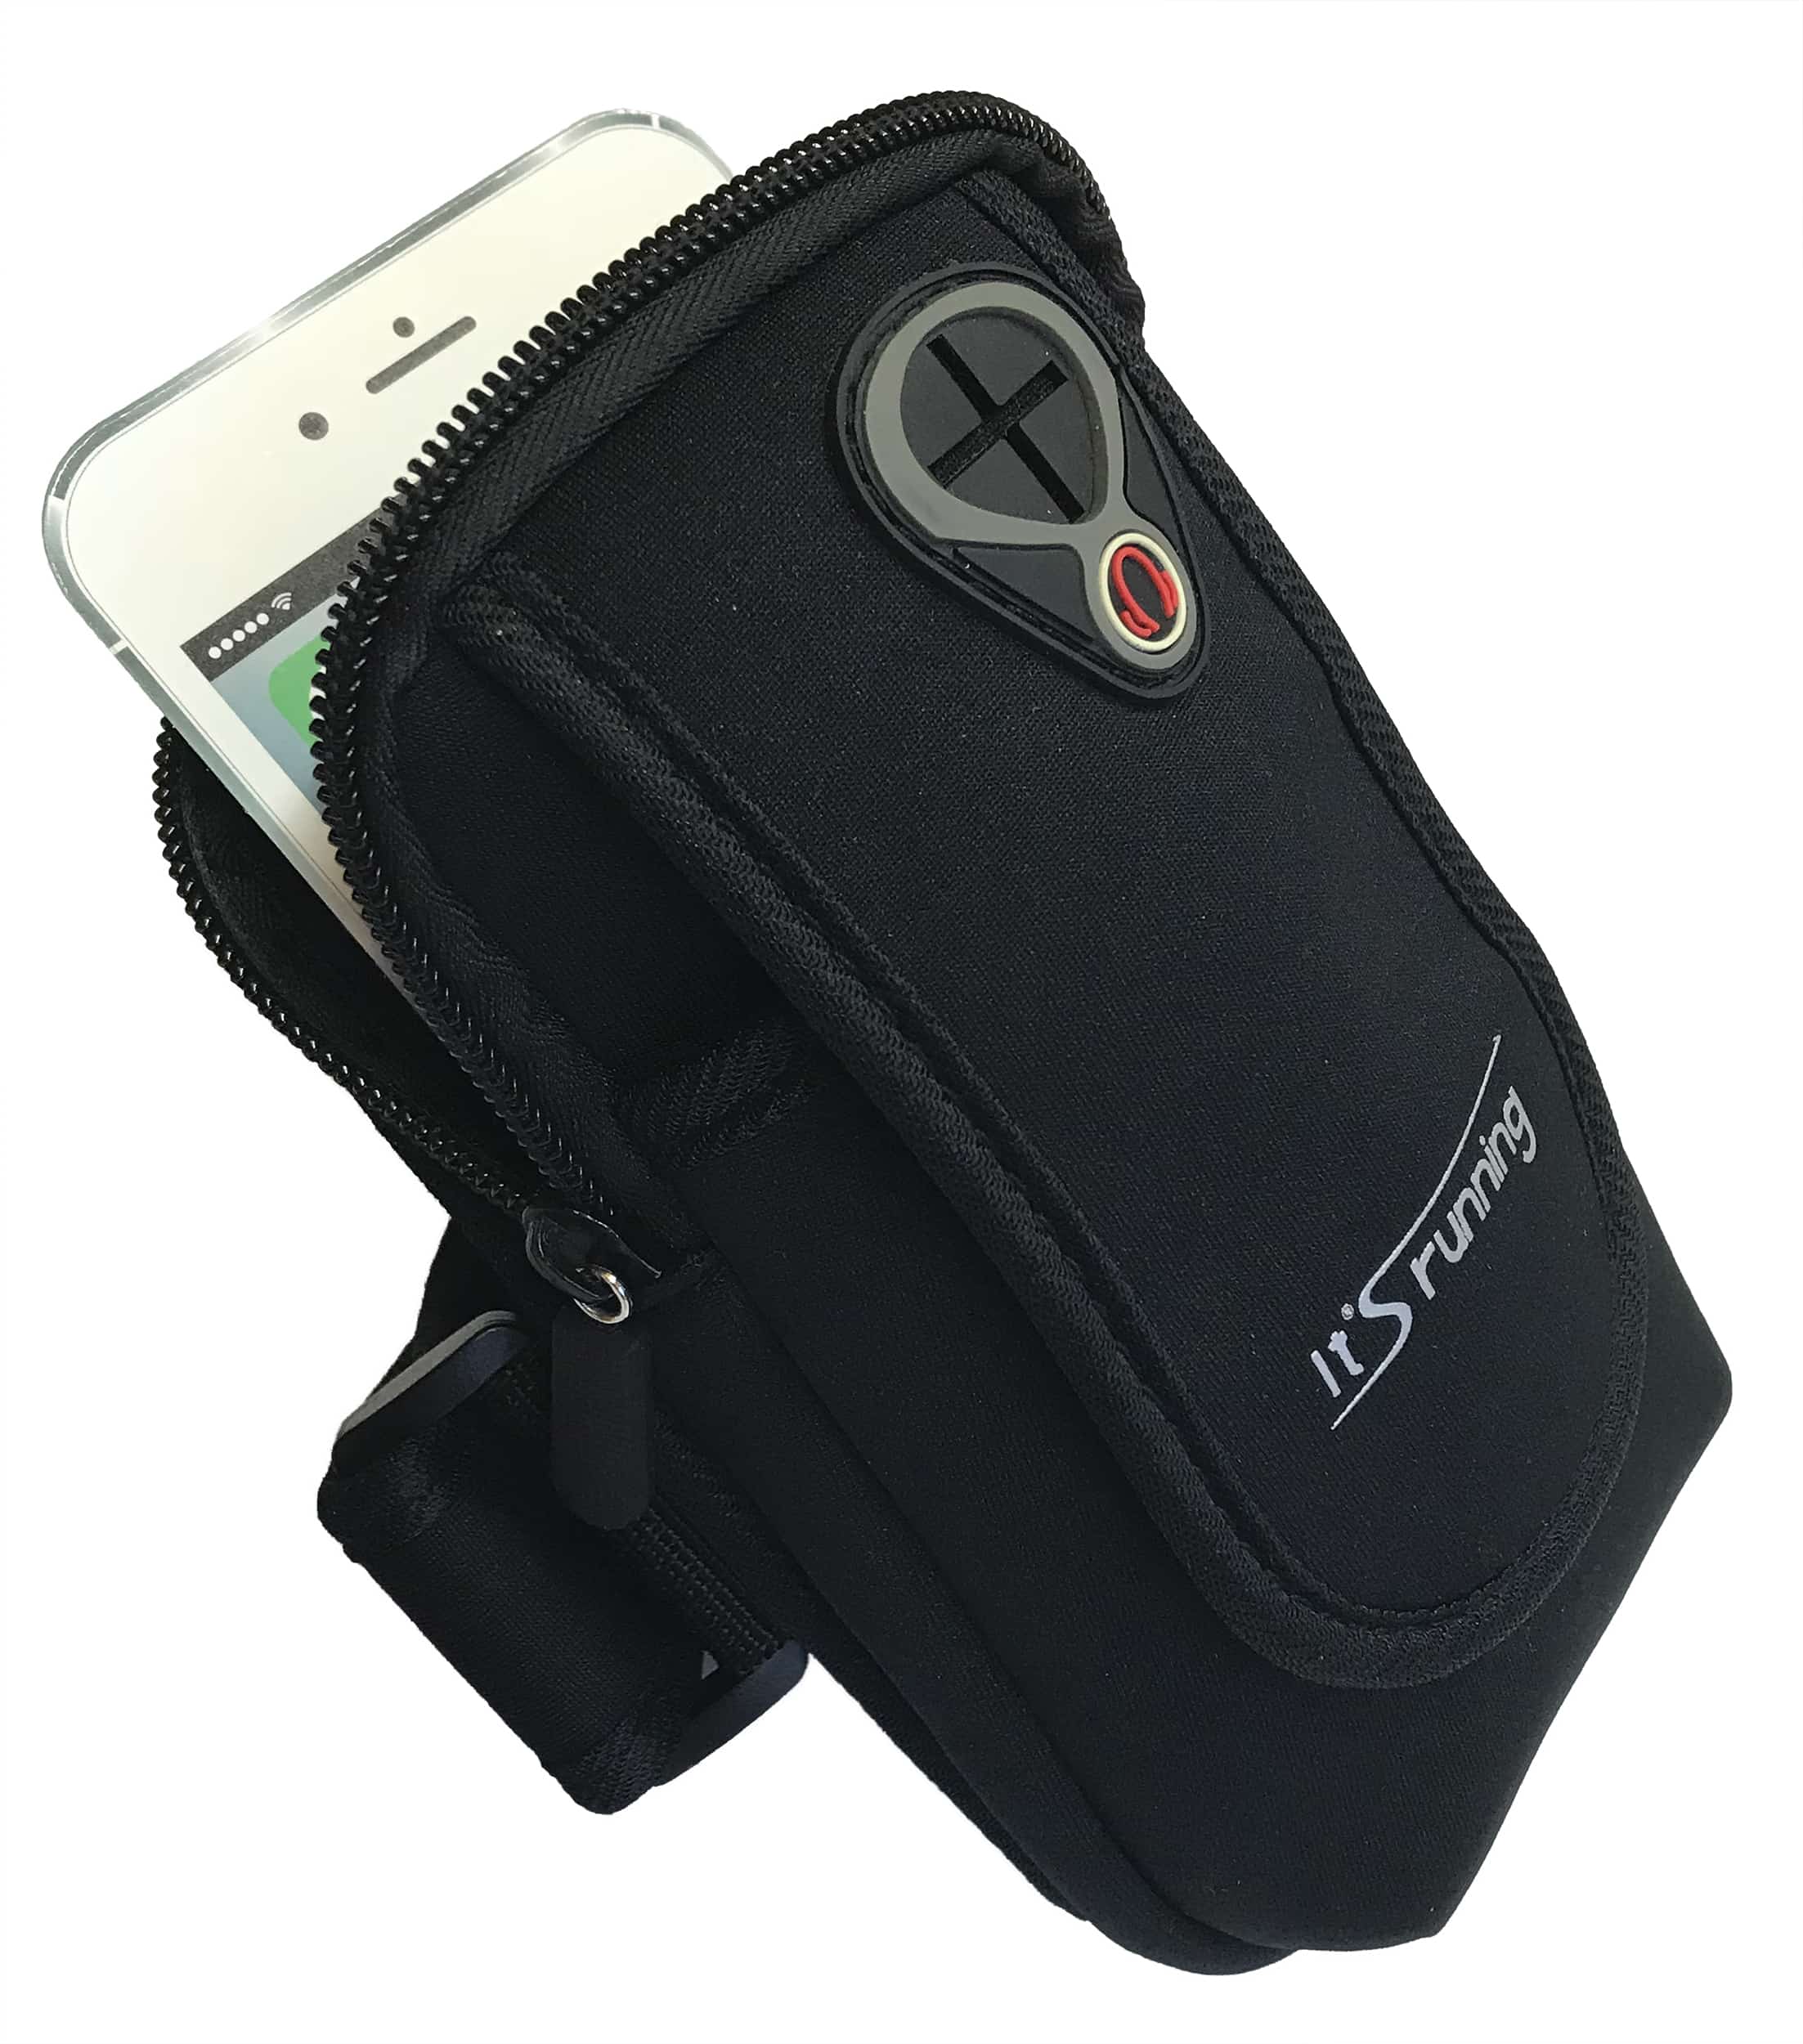 Sport-Armband1 große Oberarmtasche, 1 große Reißverschlusstasche, Kabeldurchlass für Kopfhörer, verstellbare Einheitsgröße Farbe: schwarz